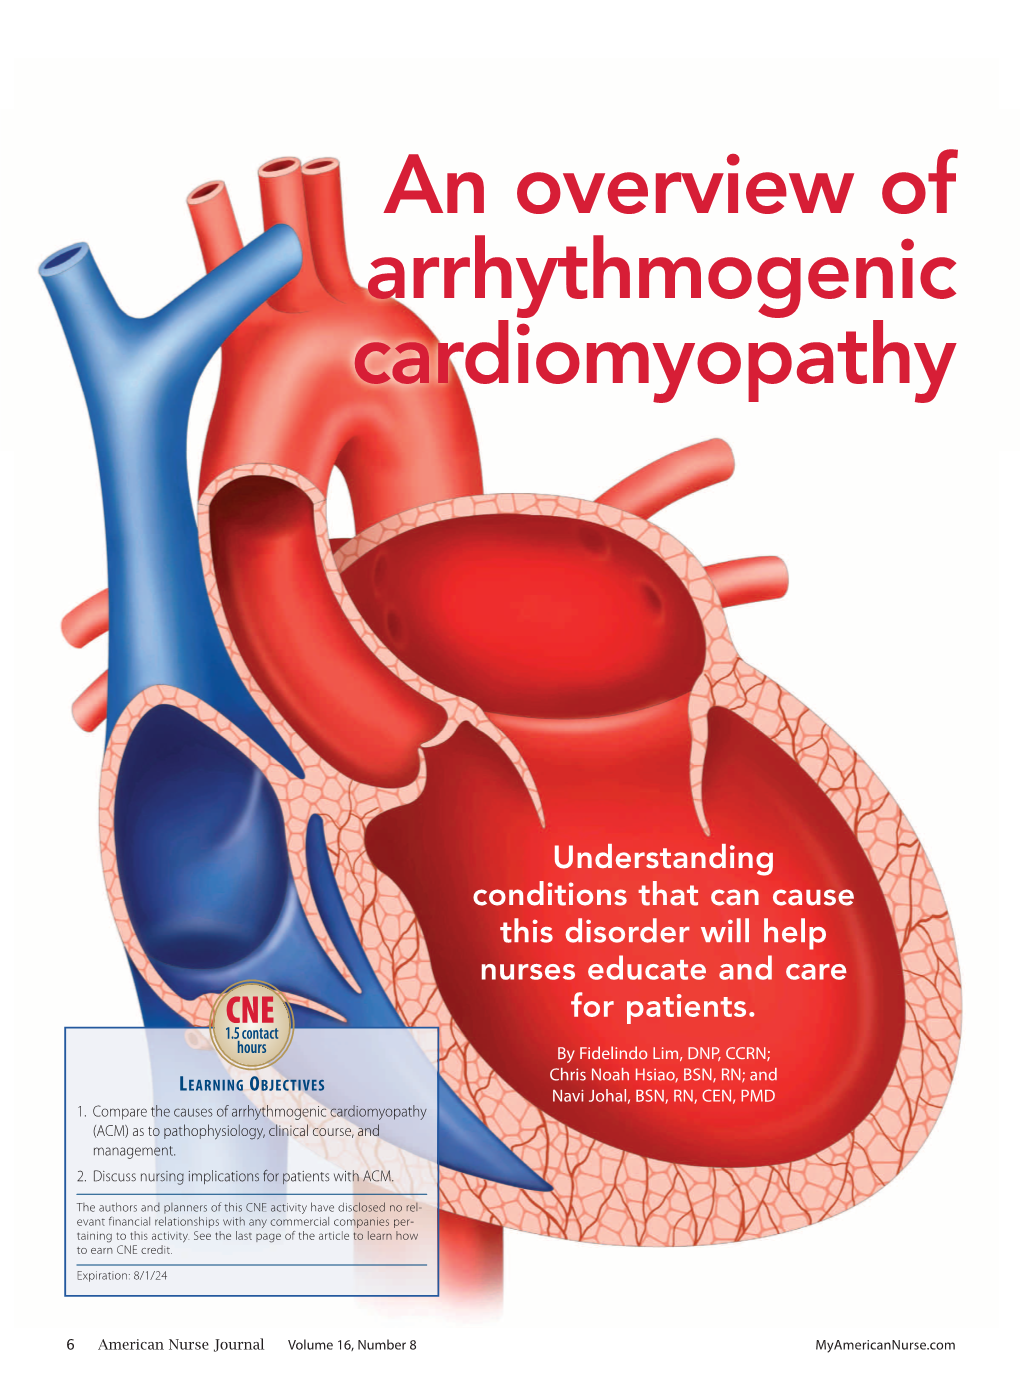 An Overview of Arrhythmogenic Cardiomyopathy